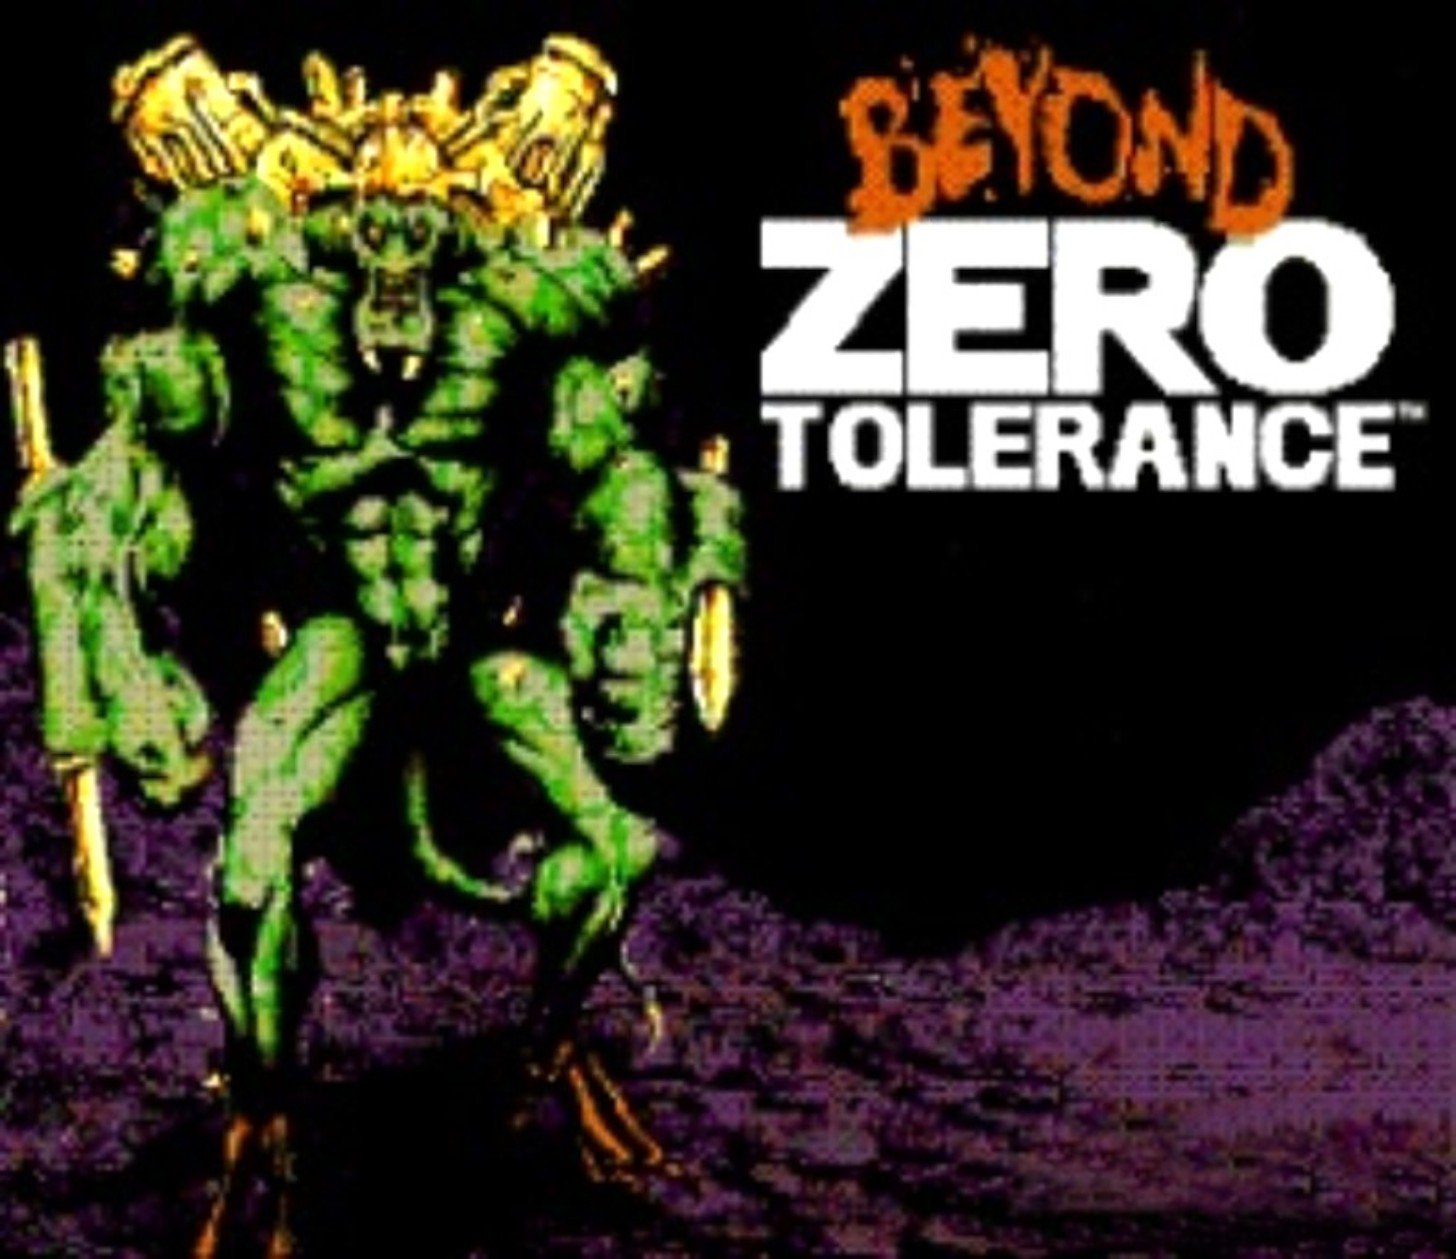 Image of Beyond Zero Tolerance